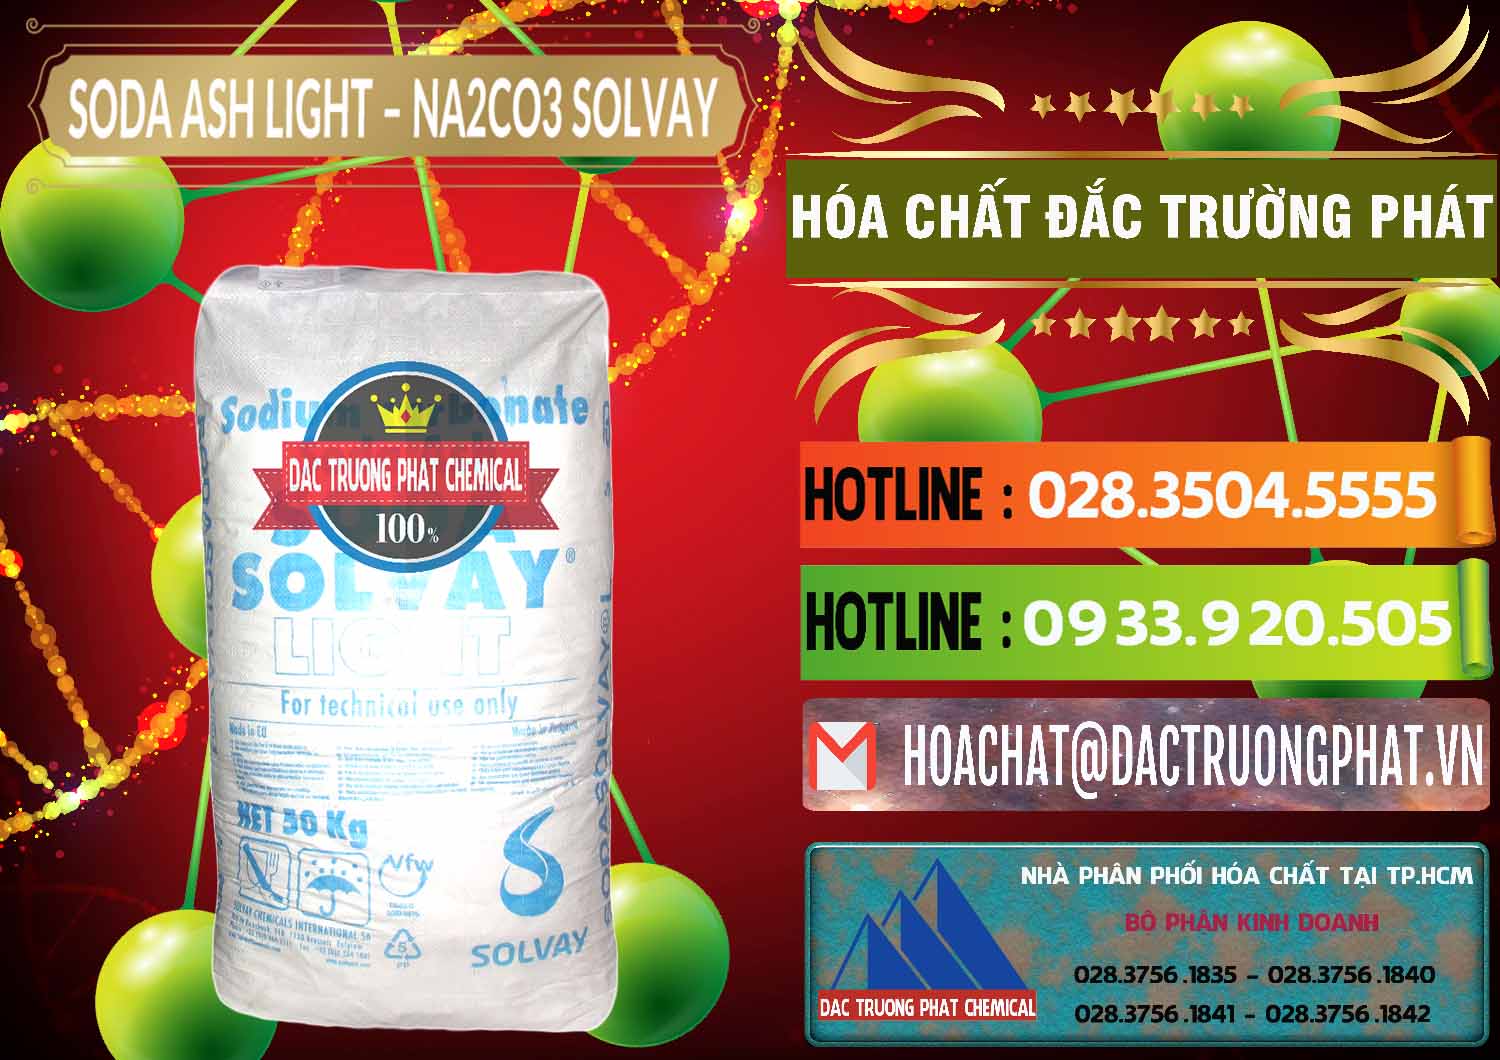 Công ty chuyên bán _ cung cấp Soda Ash Light - NA2CO3 Solvay Bulgaria - 0126 - Nơi cung cấp & phân phối hóa chất tại TP.HCM - cungcaphoachat.com.vn